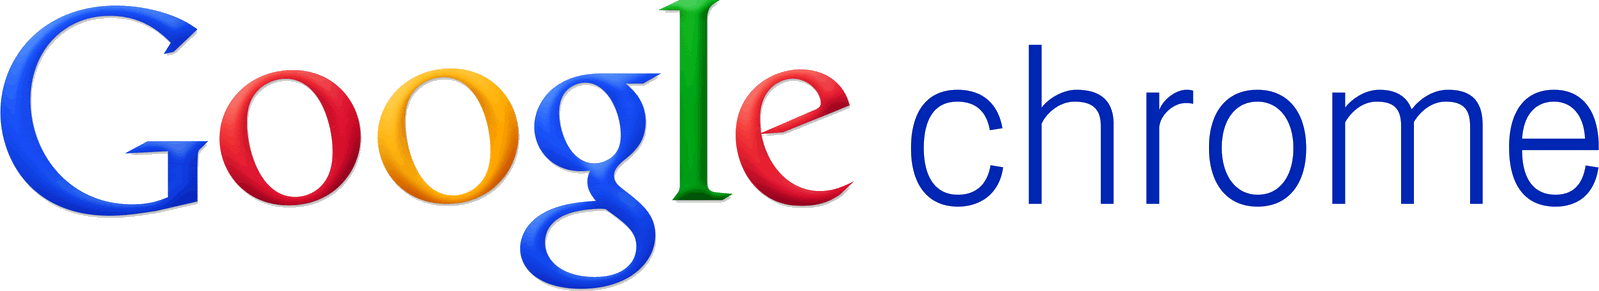 Chrome Google Logo PNG Transparent Image